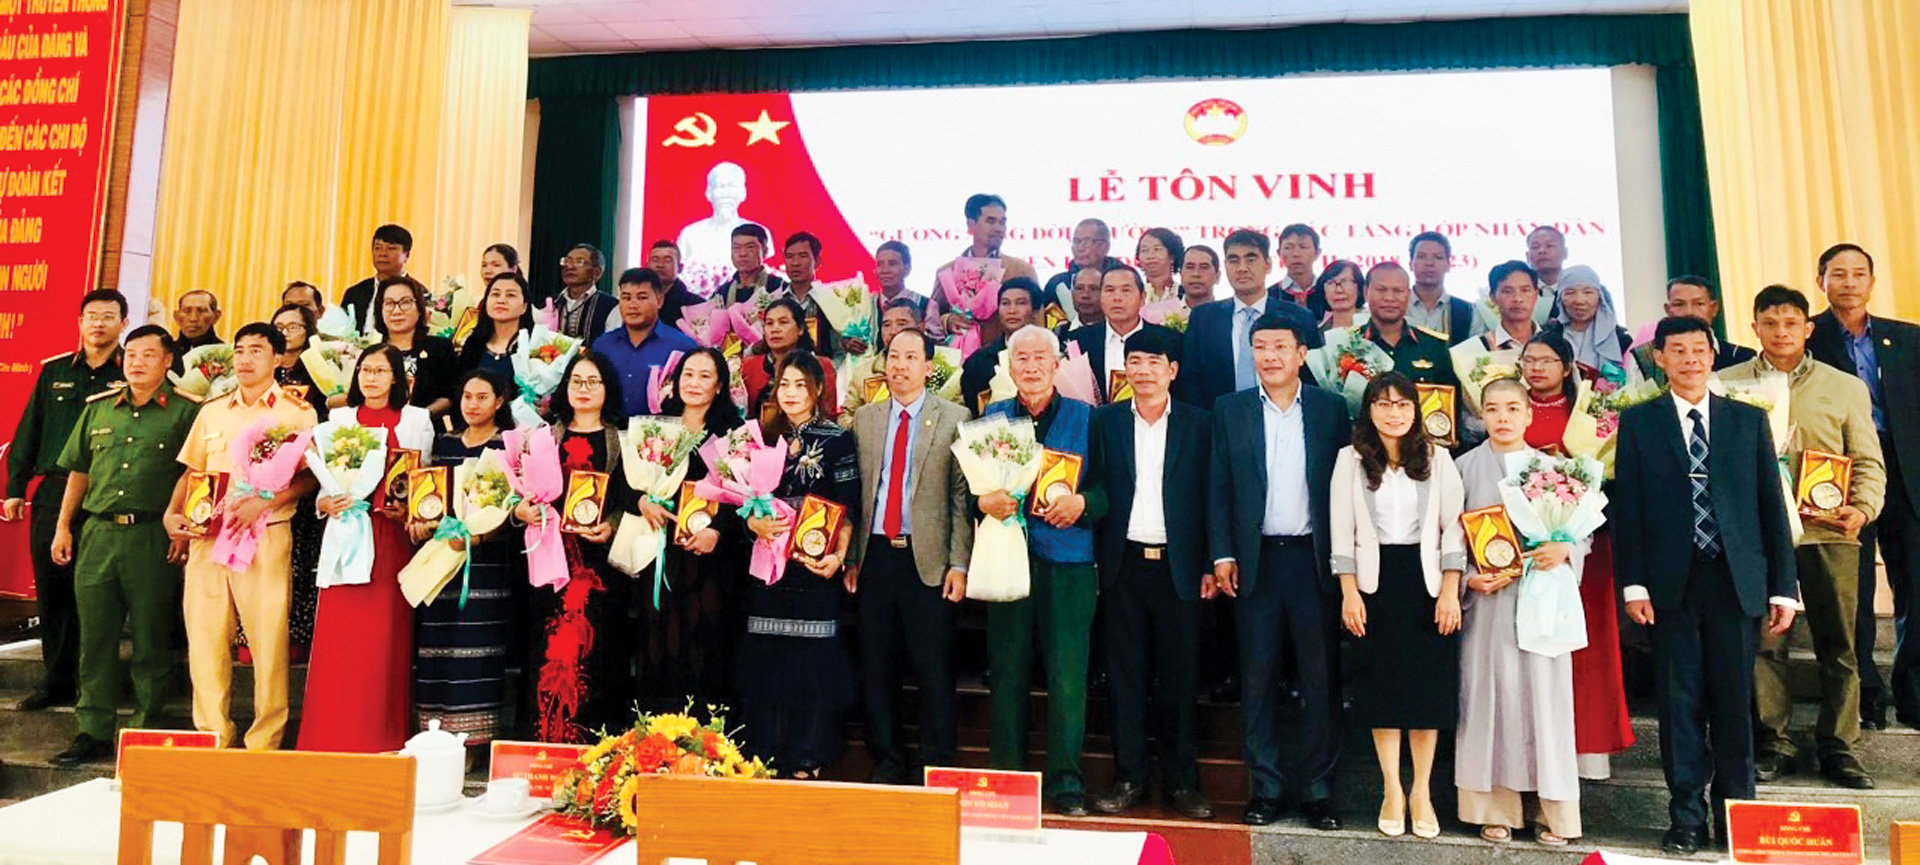 Lãnh đạo huyện Lạc Dương chụp hình lưu niệm với những gương sáng đời thường giai đoạn 2018-2023 vừa được tôn vinh